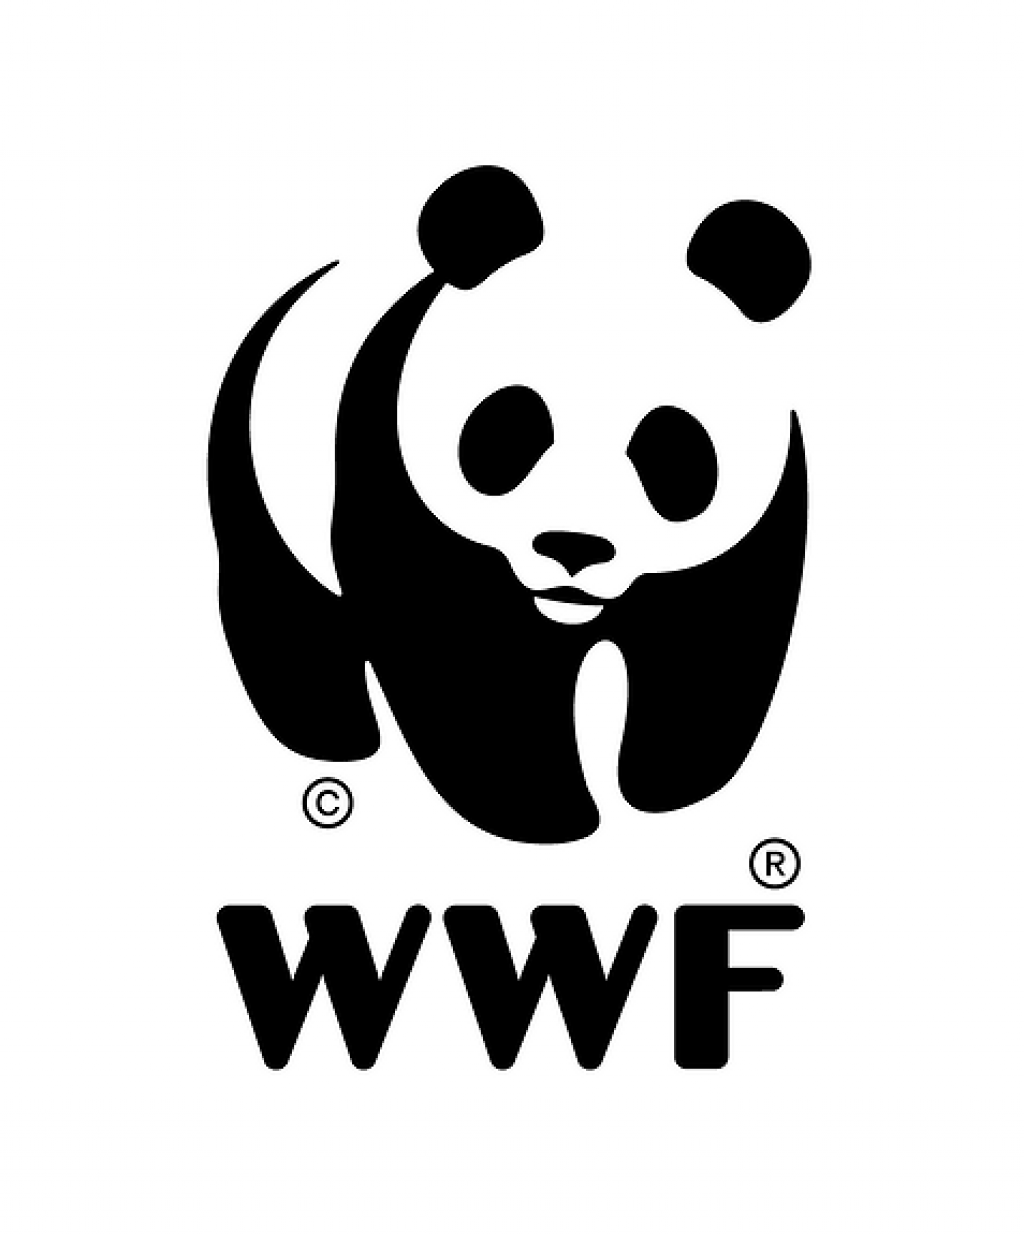 WWF Verdens naturfond søker presserådgiver